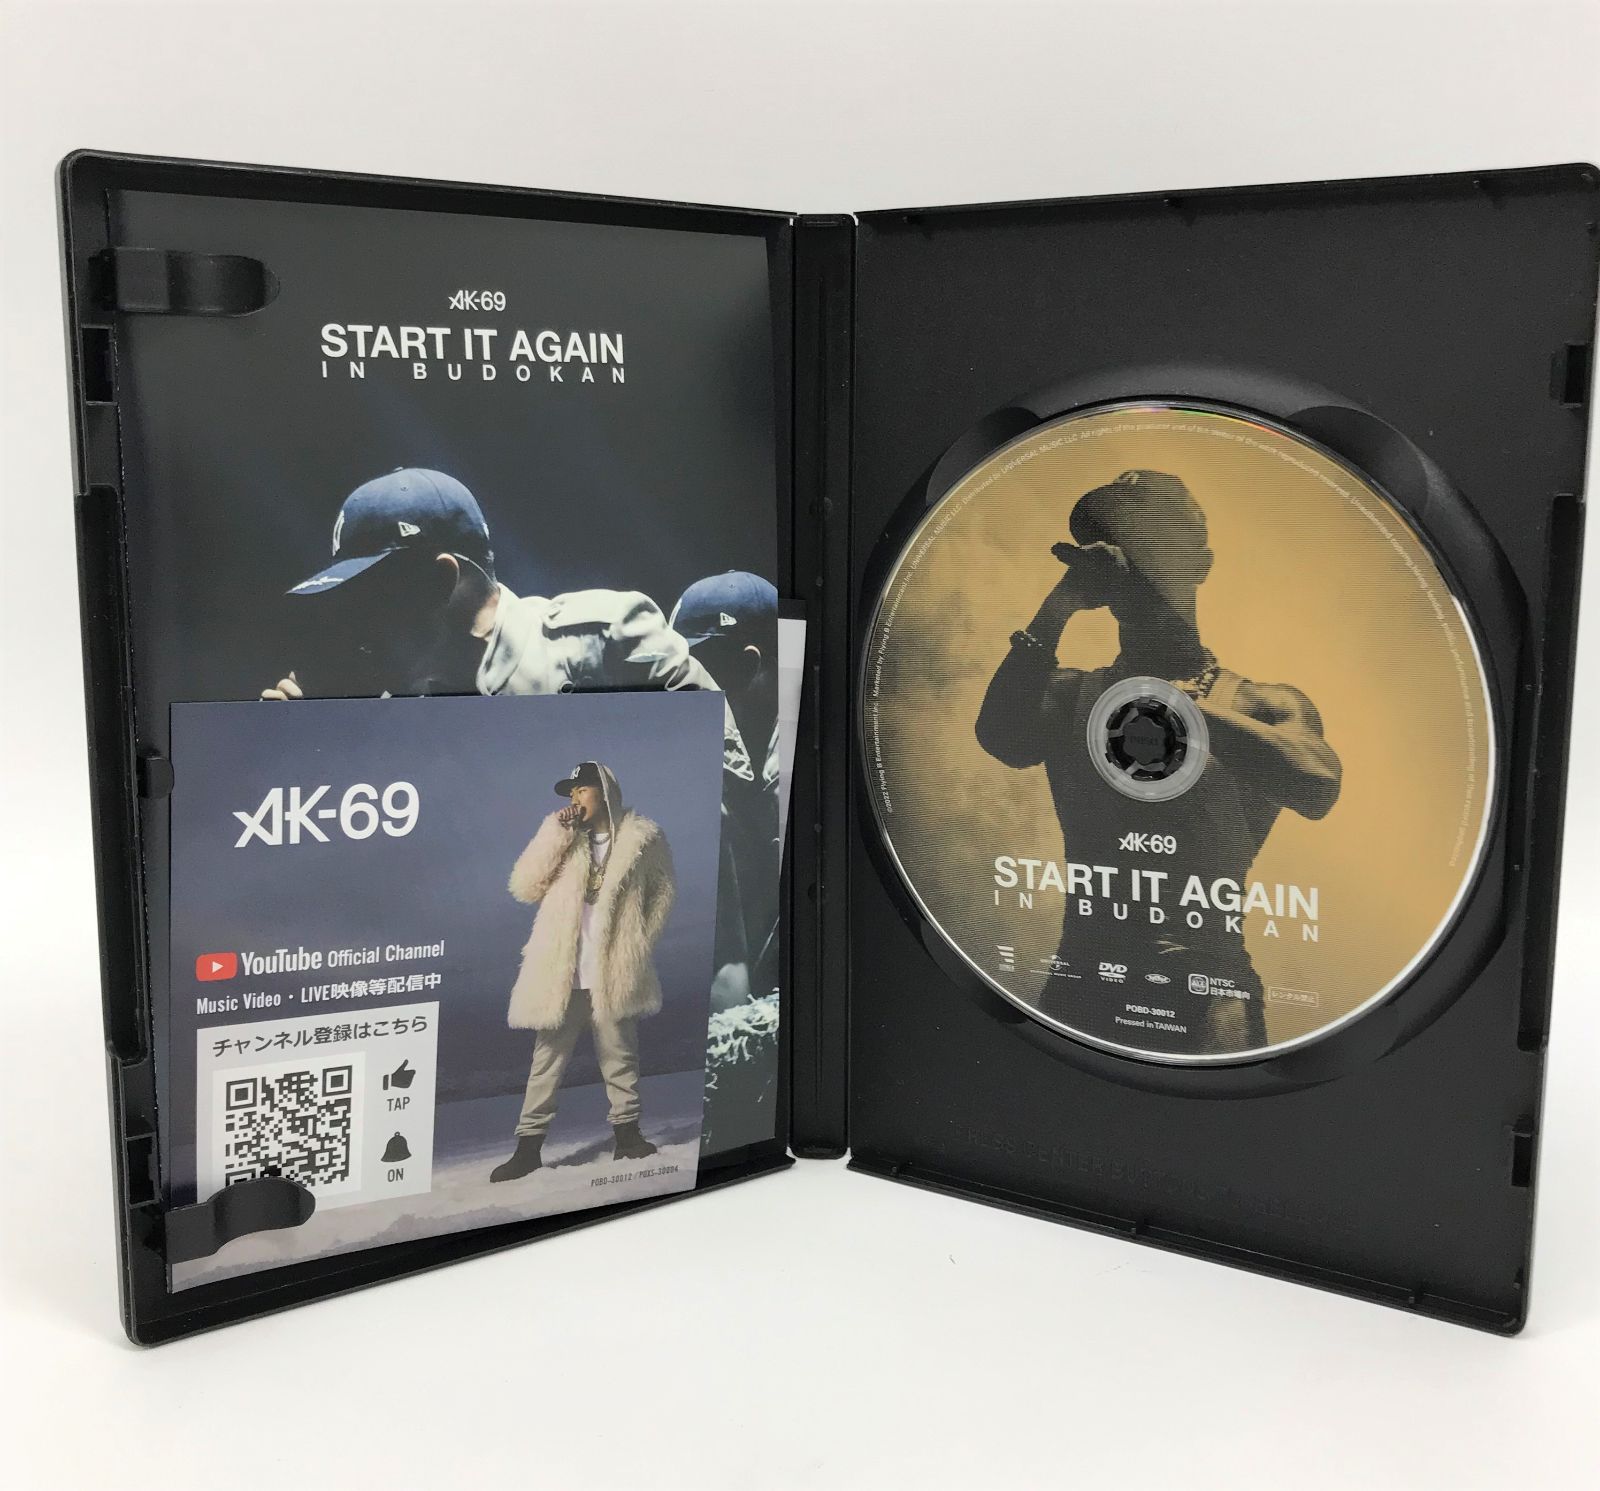 D-0071】AK-69/START IT AGAIN in BUDOKAN DVD - D.R.shop - メルカリ